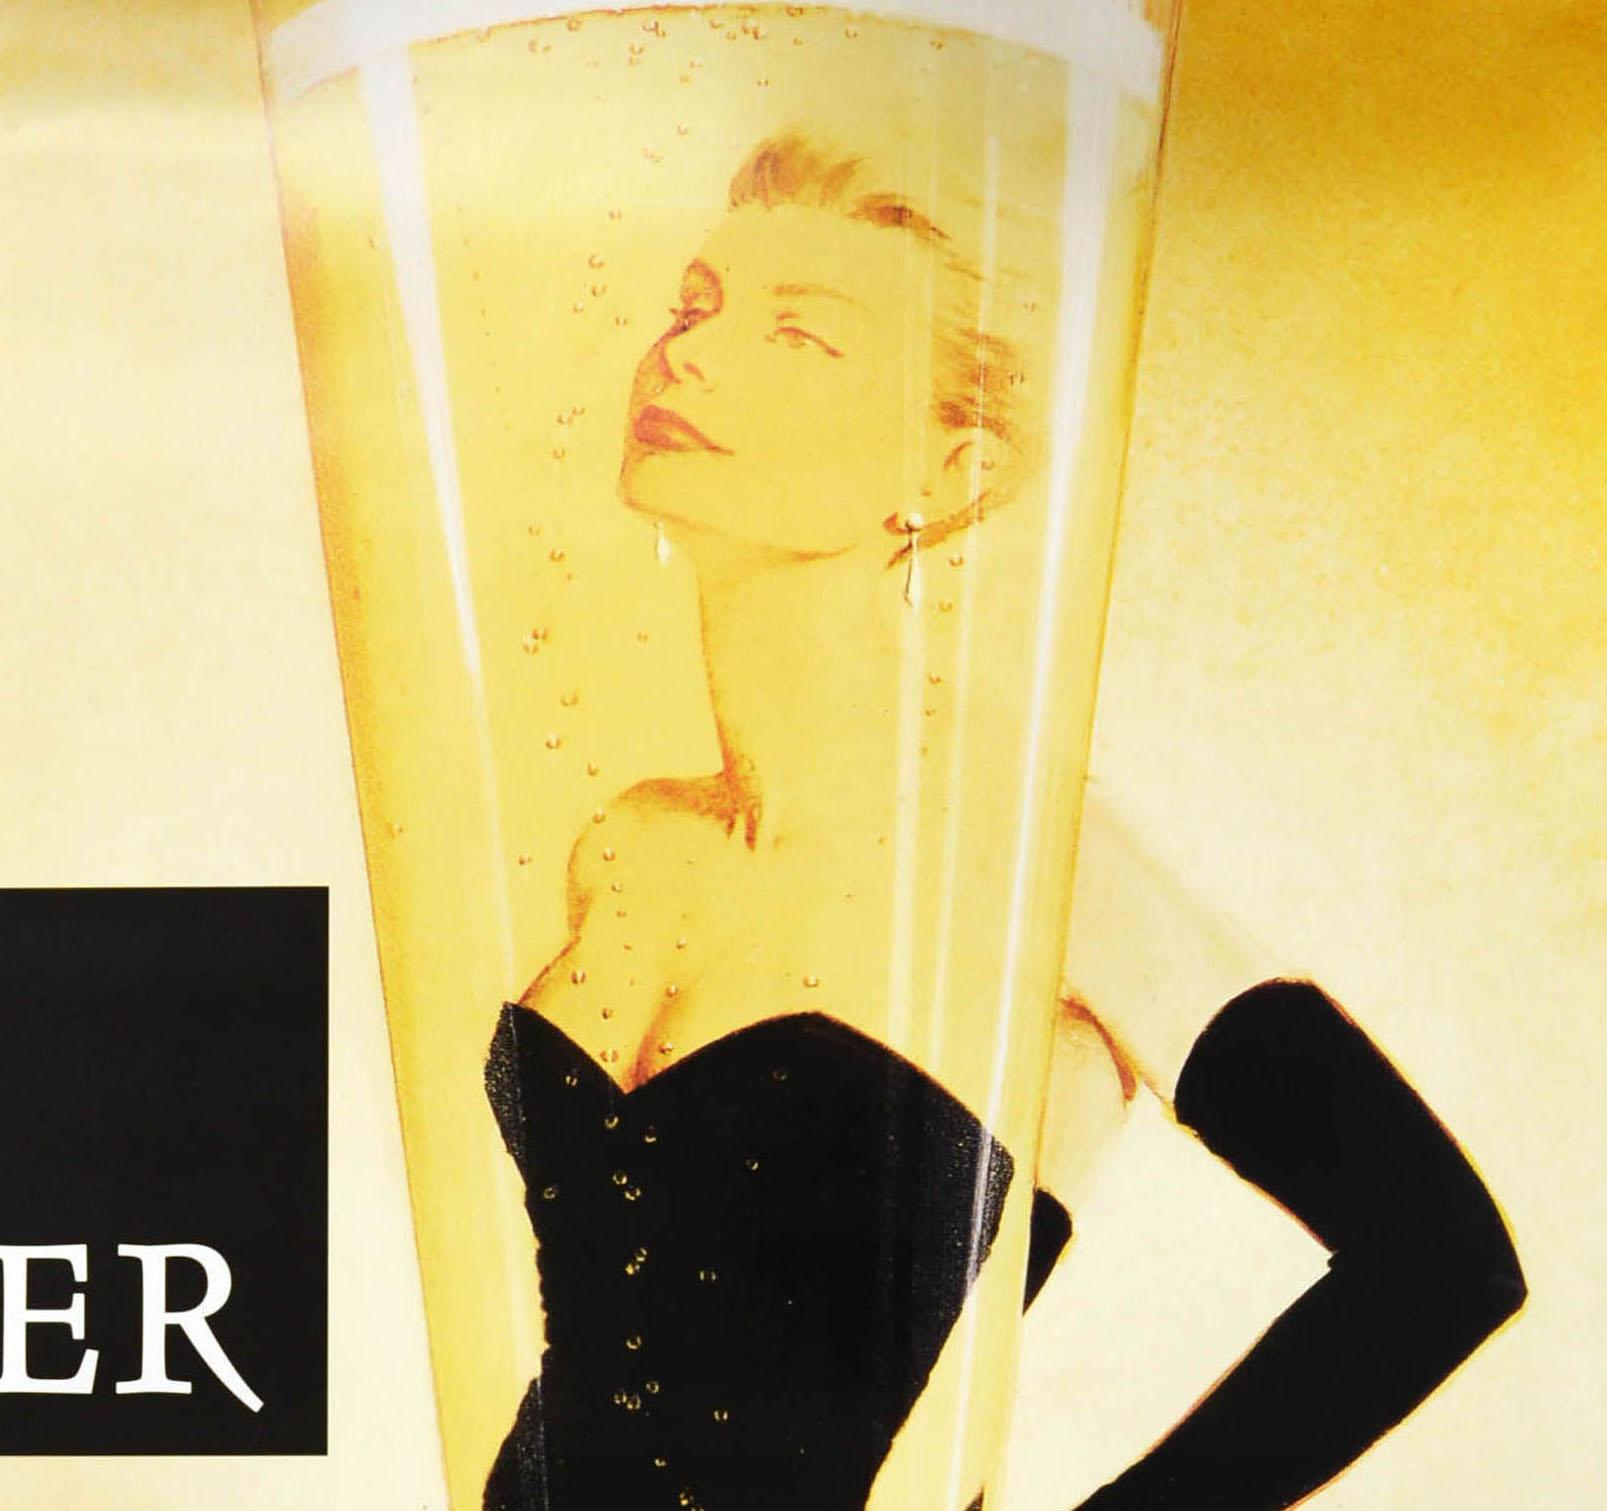 Affiche publicitaire originale pour le champagne Taittinger - L'Instant Taittinger / The Taittinger Moment - présentant l'image classique d'une élégante dame portant une robe de soirée noire en queue de poisson et de longs gants noirs derrière une